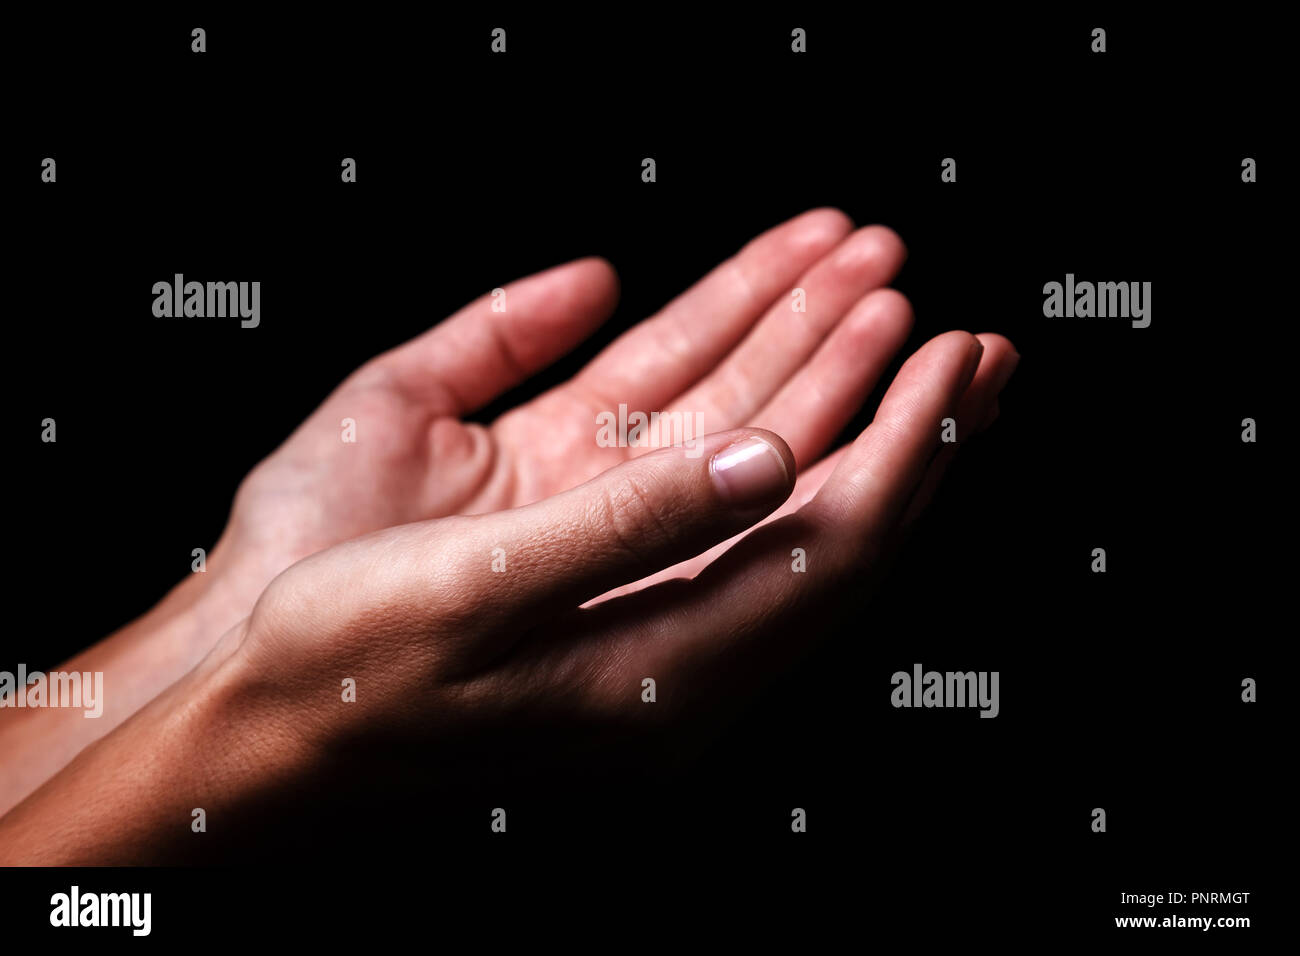 Weibliche Hände betend mit Handflächen nach oben ausgestreckten Armen. Schwarzen Hintergrund. Nahaufnahme von Frau Hand. Konzept für Gebet, Glauben, Religion, religiös, worshi Stockfoto